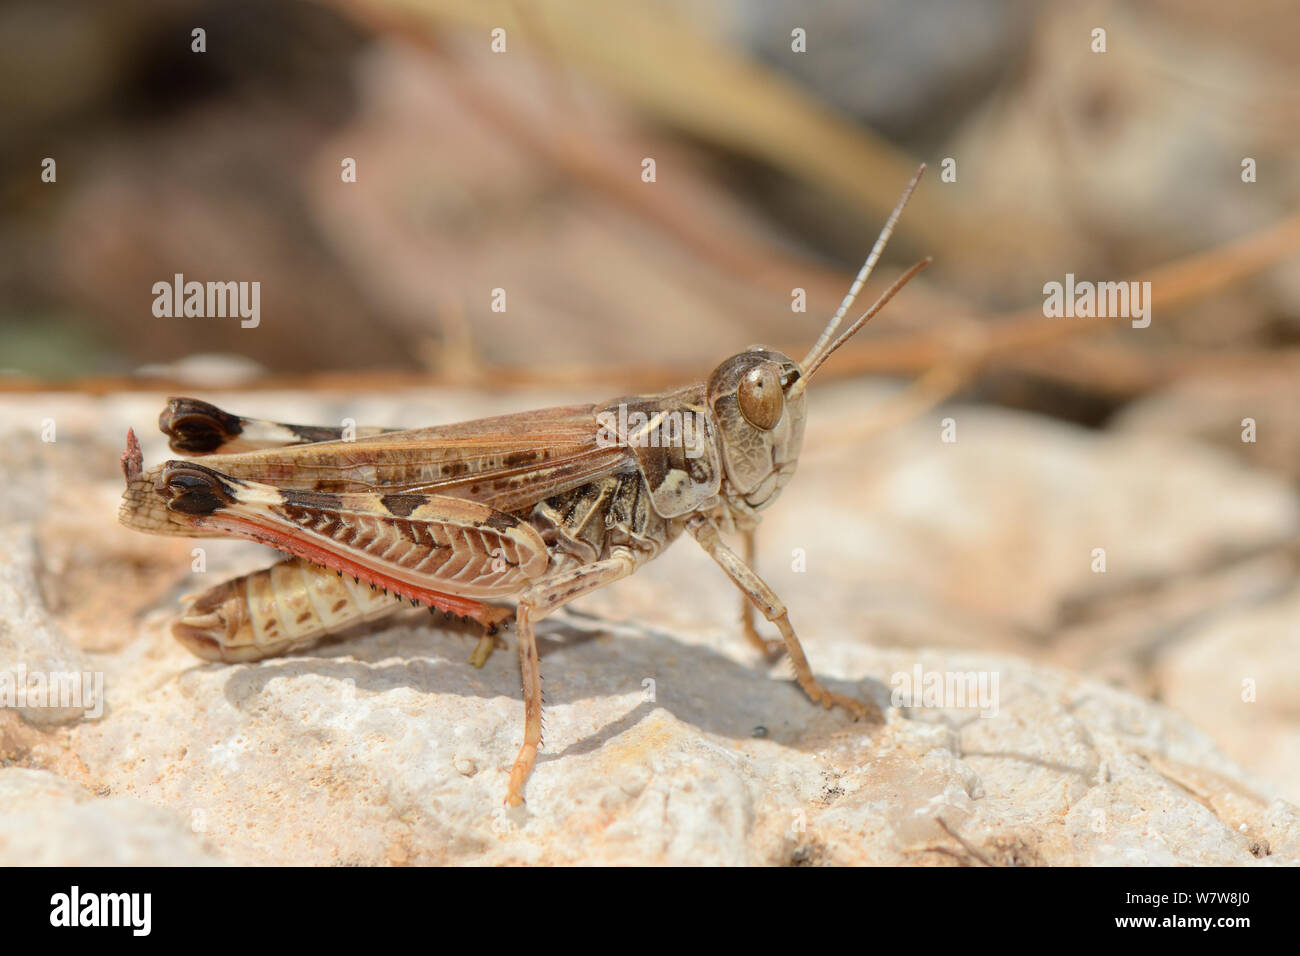 Marokkanische Locust (Dociostaurus maroccanus), eine Spezies in der Lage, verheerende Heuschreckenschwärme, stehend auf einem Felsen in der Nähe der Küste, Kreta, Griechenland, Mai. Stockfoto